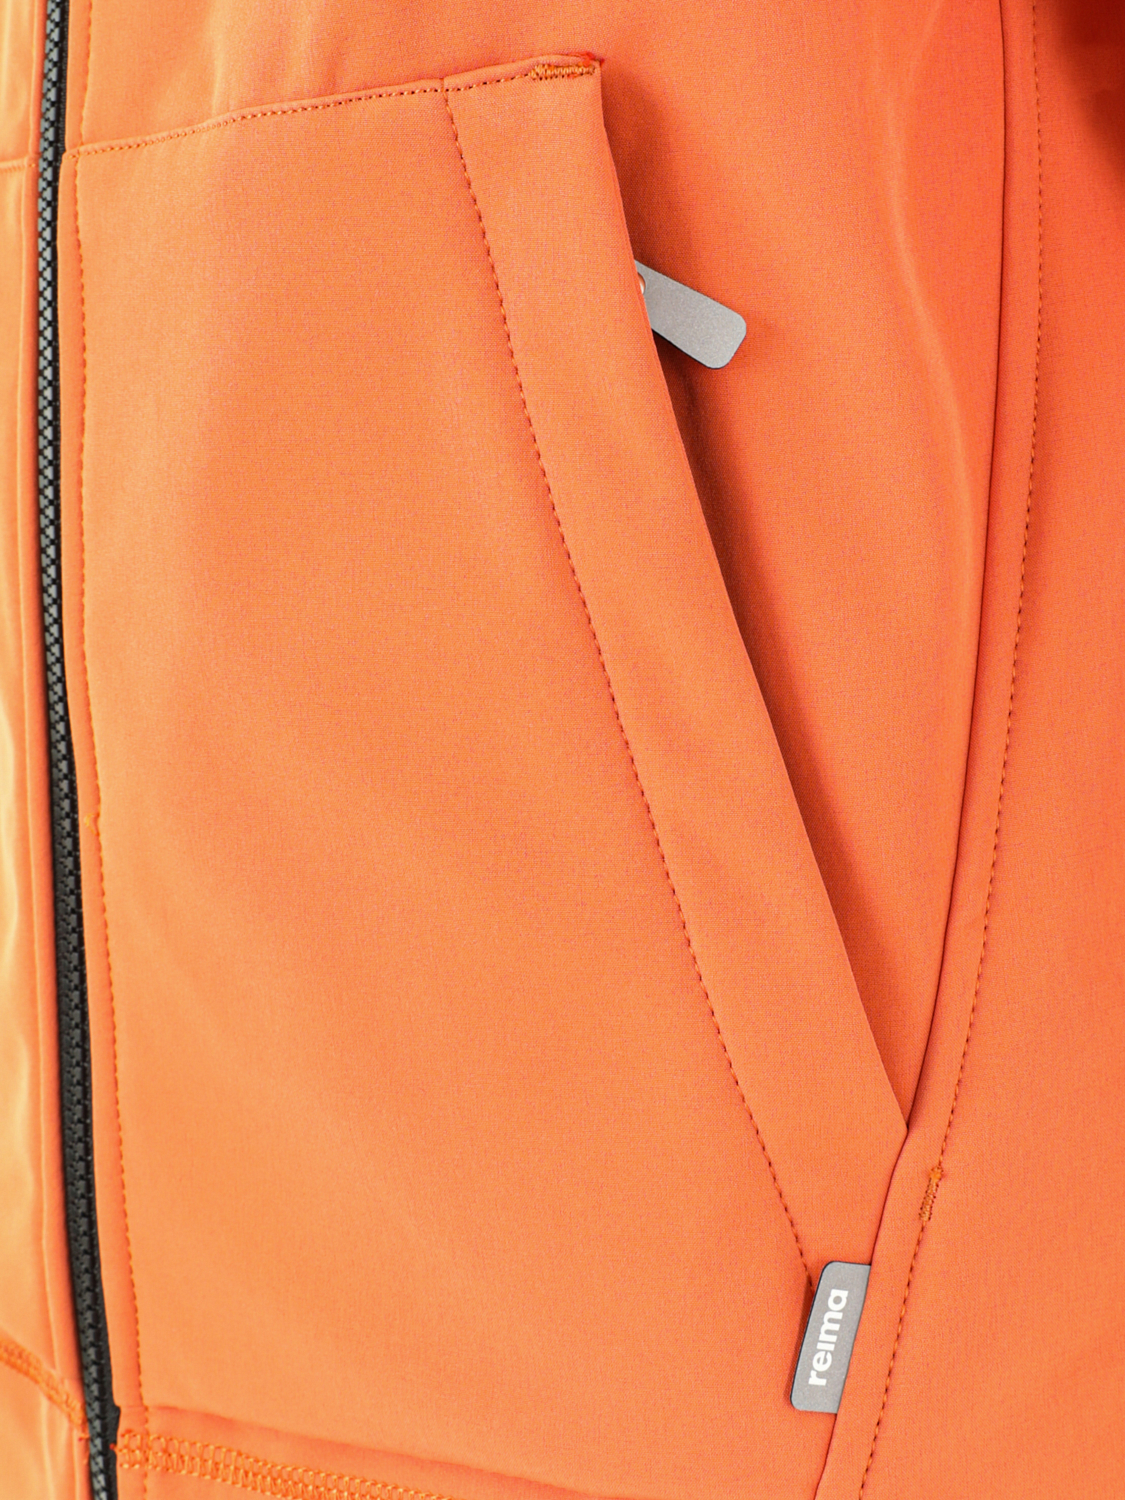 Куртка детская Reima Sipoo True Orange